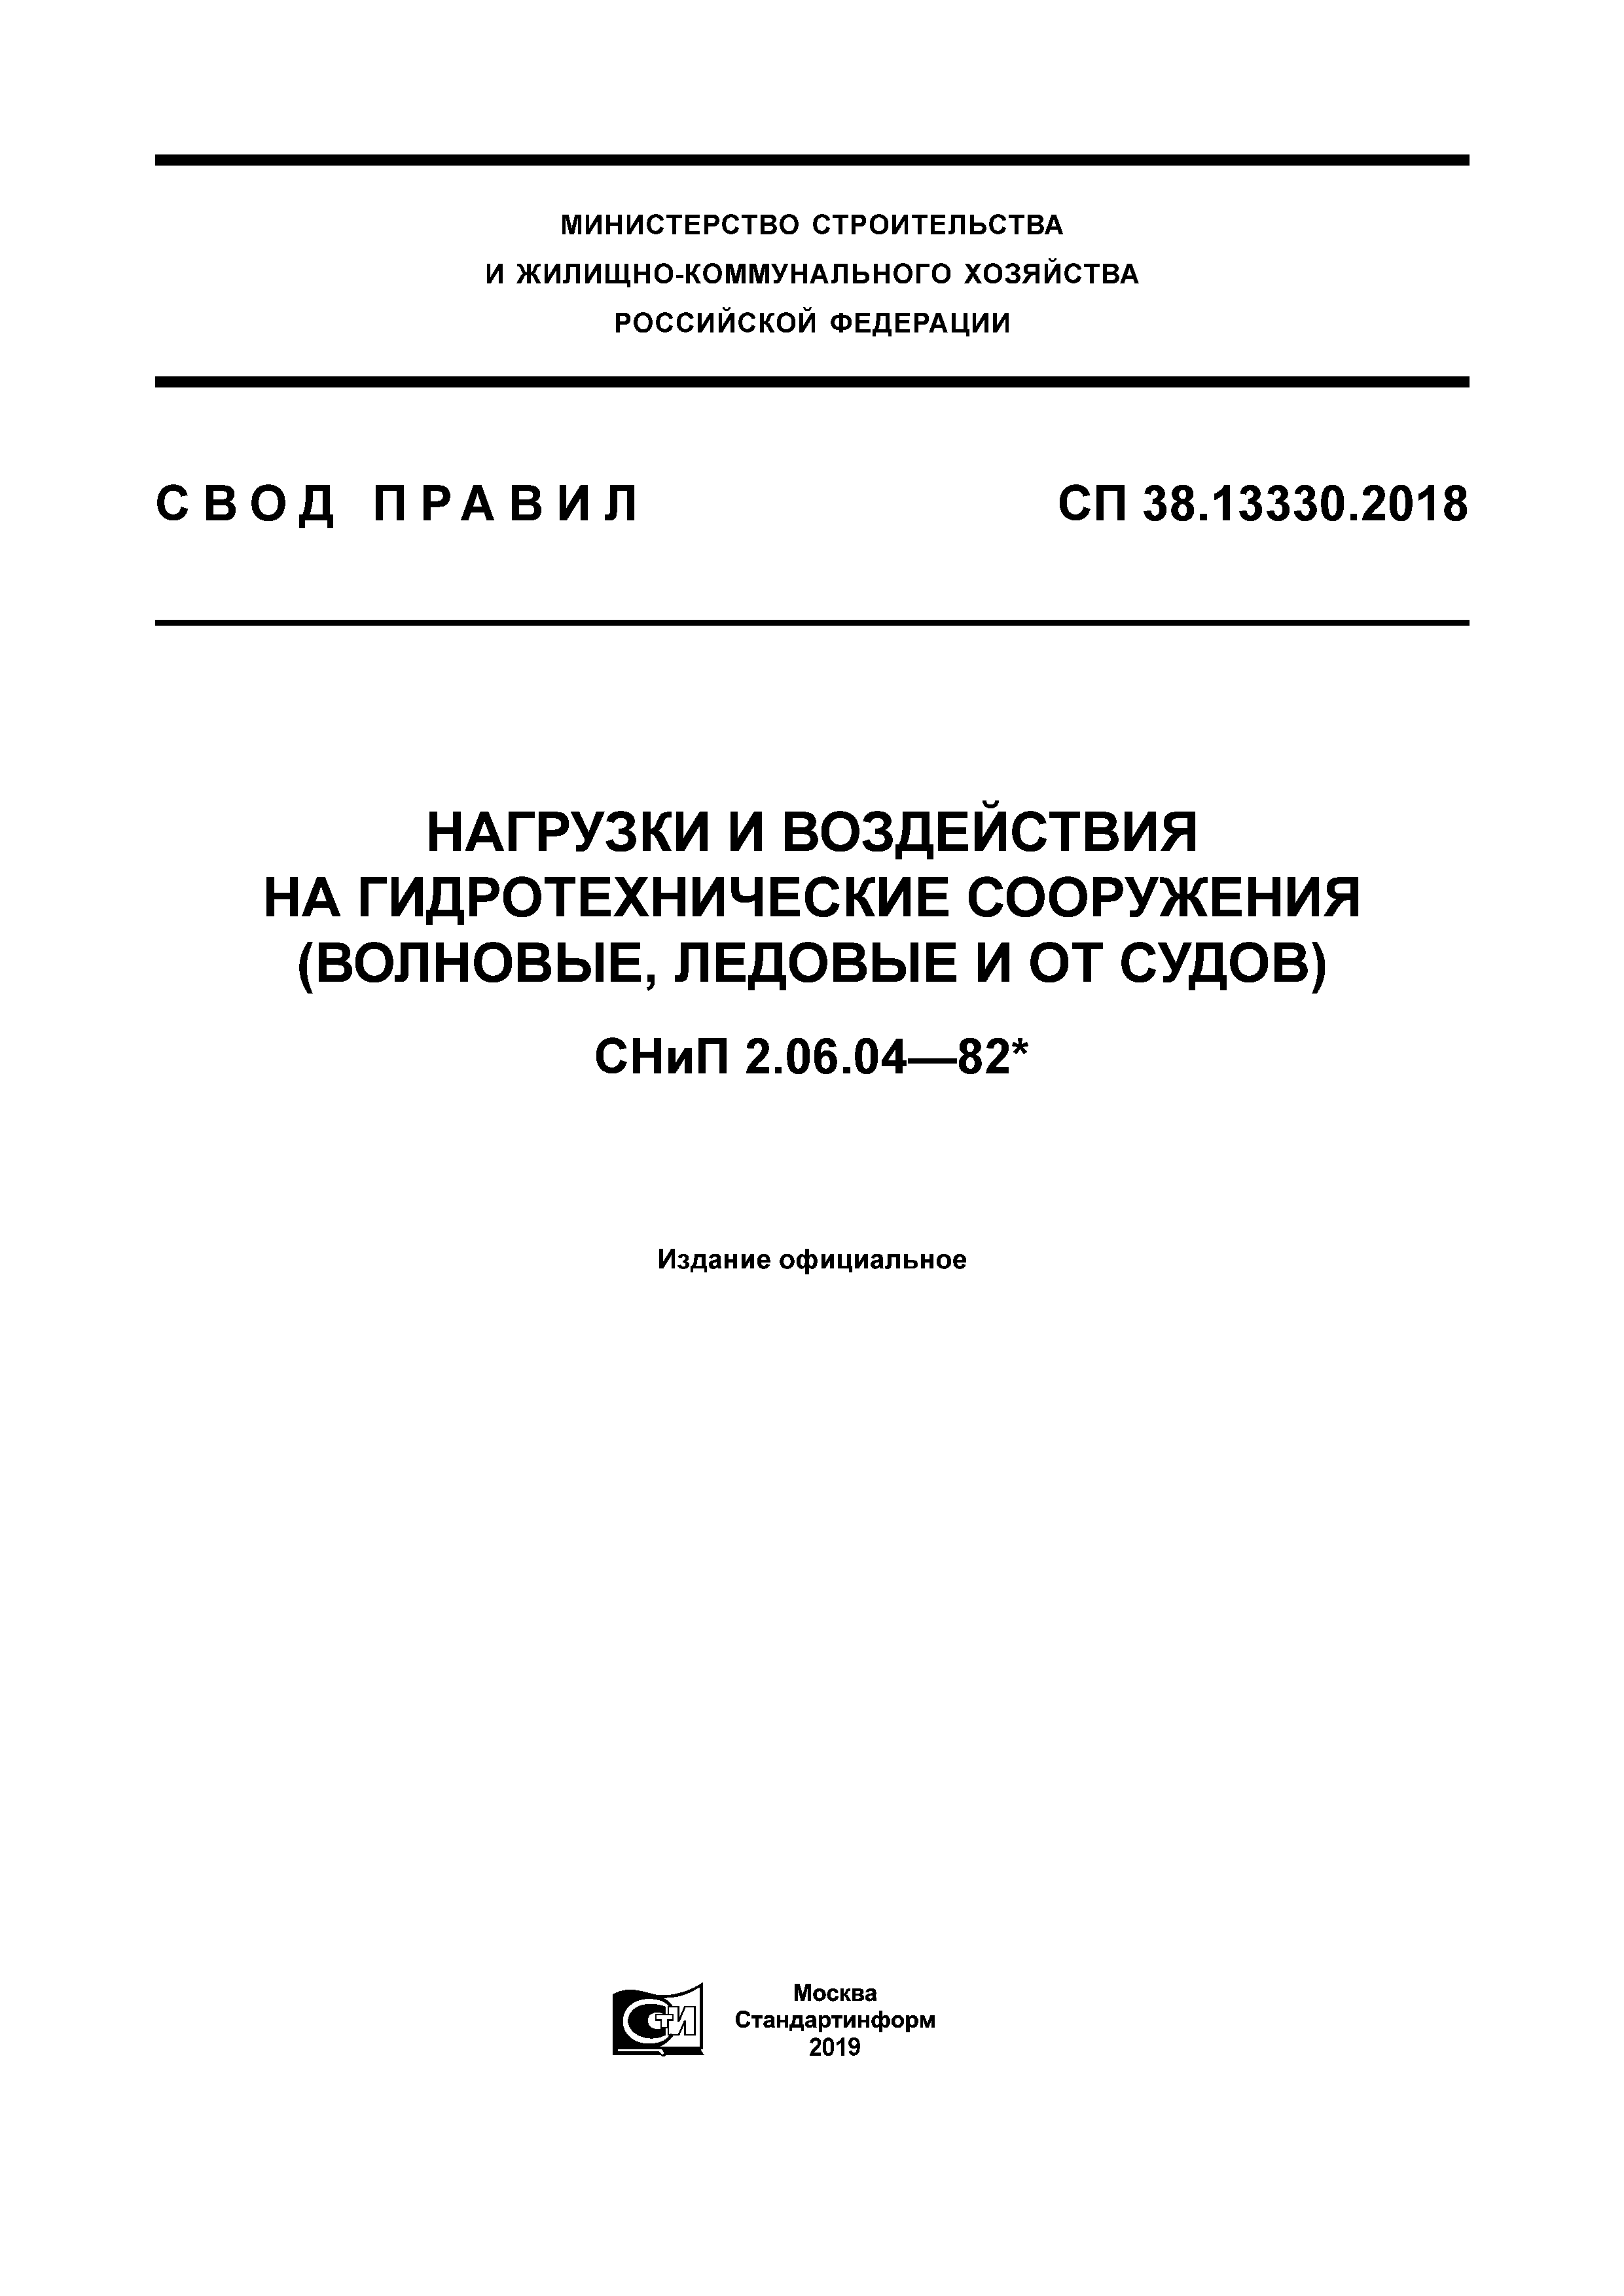 СП 38.13330.2018